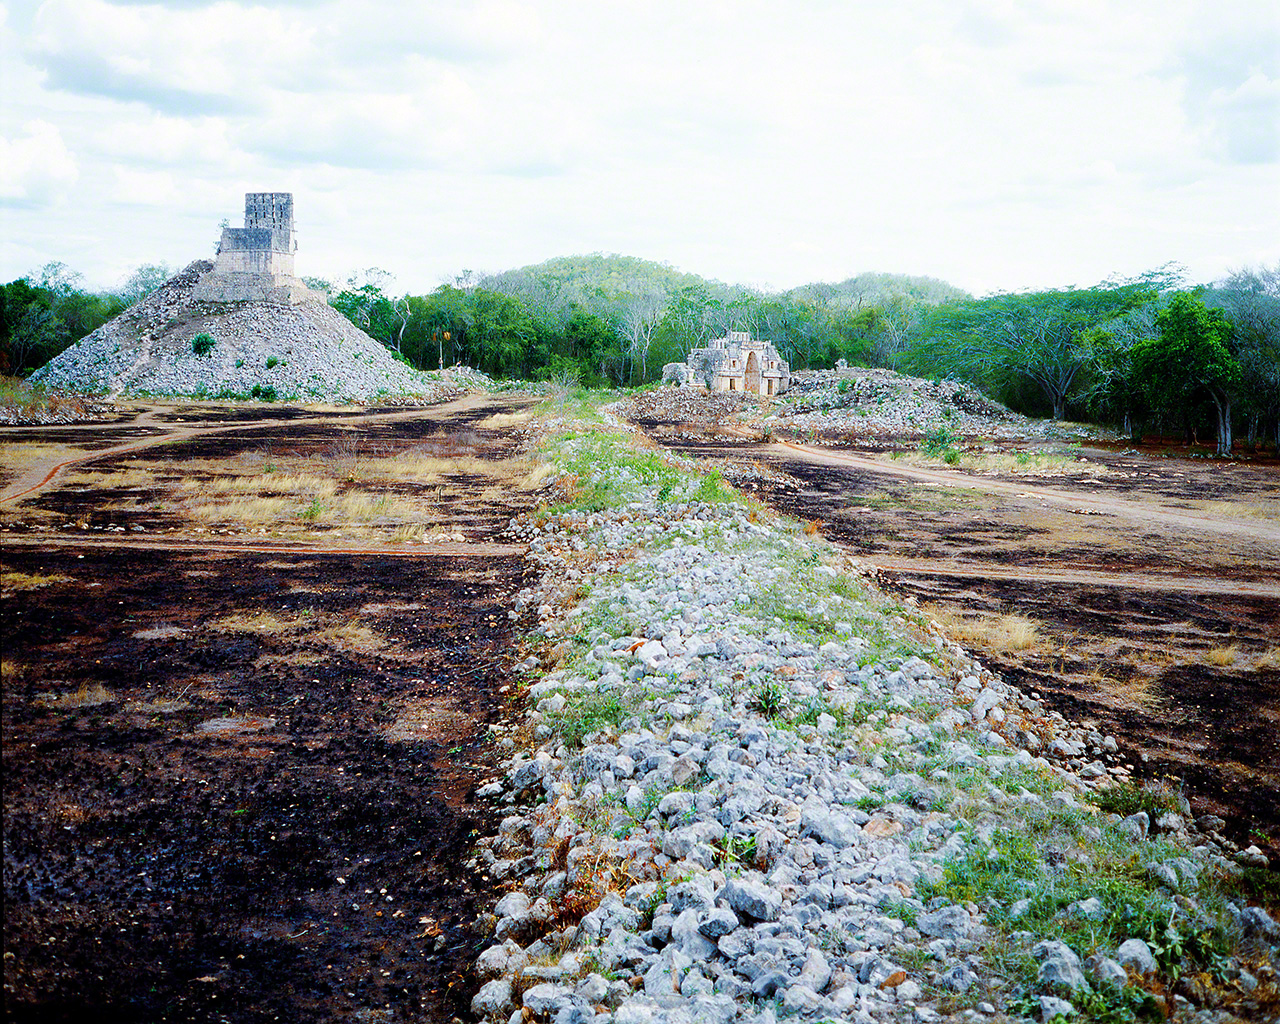 拍摄于1981年。当时我参与挖掘和调查墨西哥玛雅遗迹一条人工铺筑的路。这段经历成为我立志做一名节日摄影师的契机